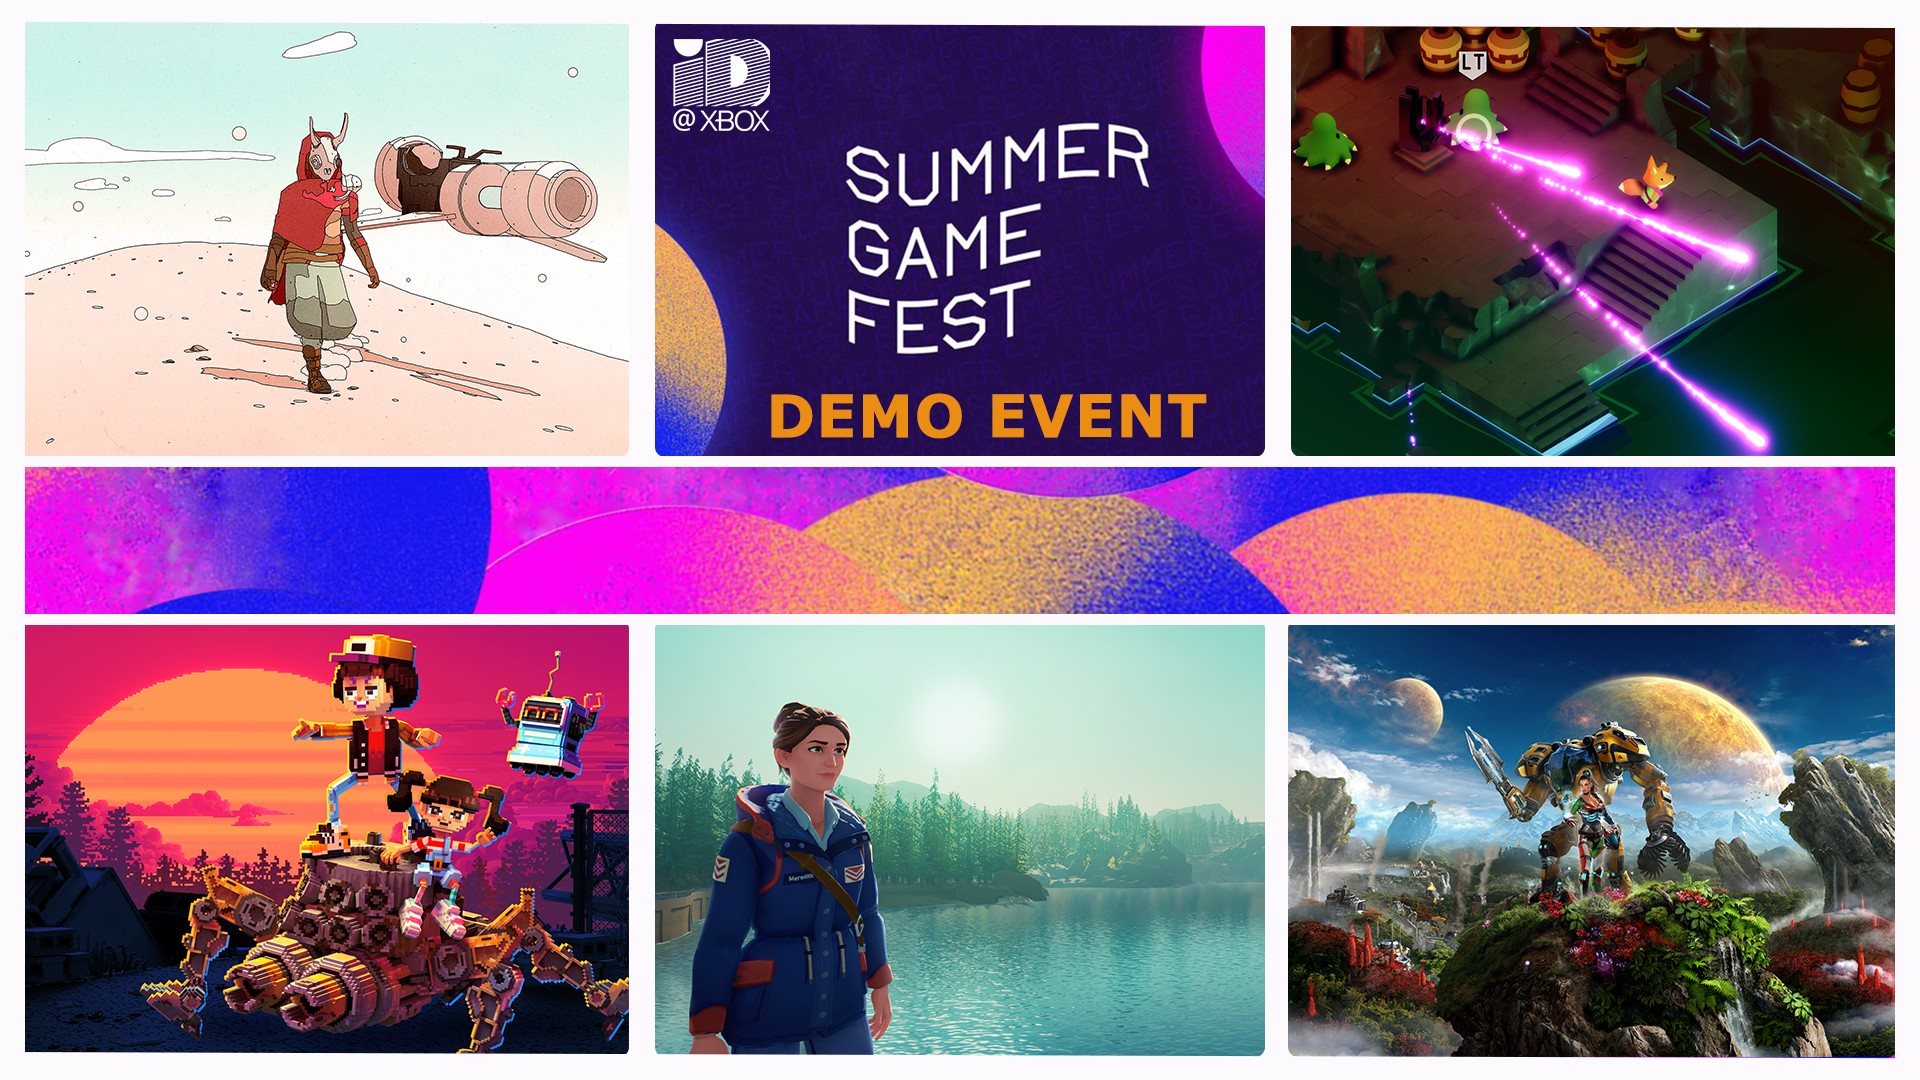 Notre deuxième Summer Game Fest Demo Event commence le 15 juin sur Xbox